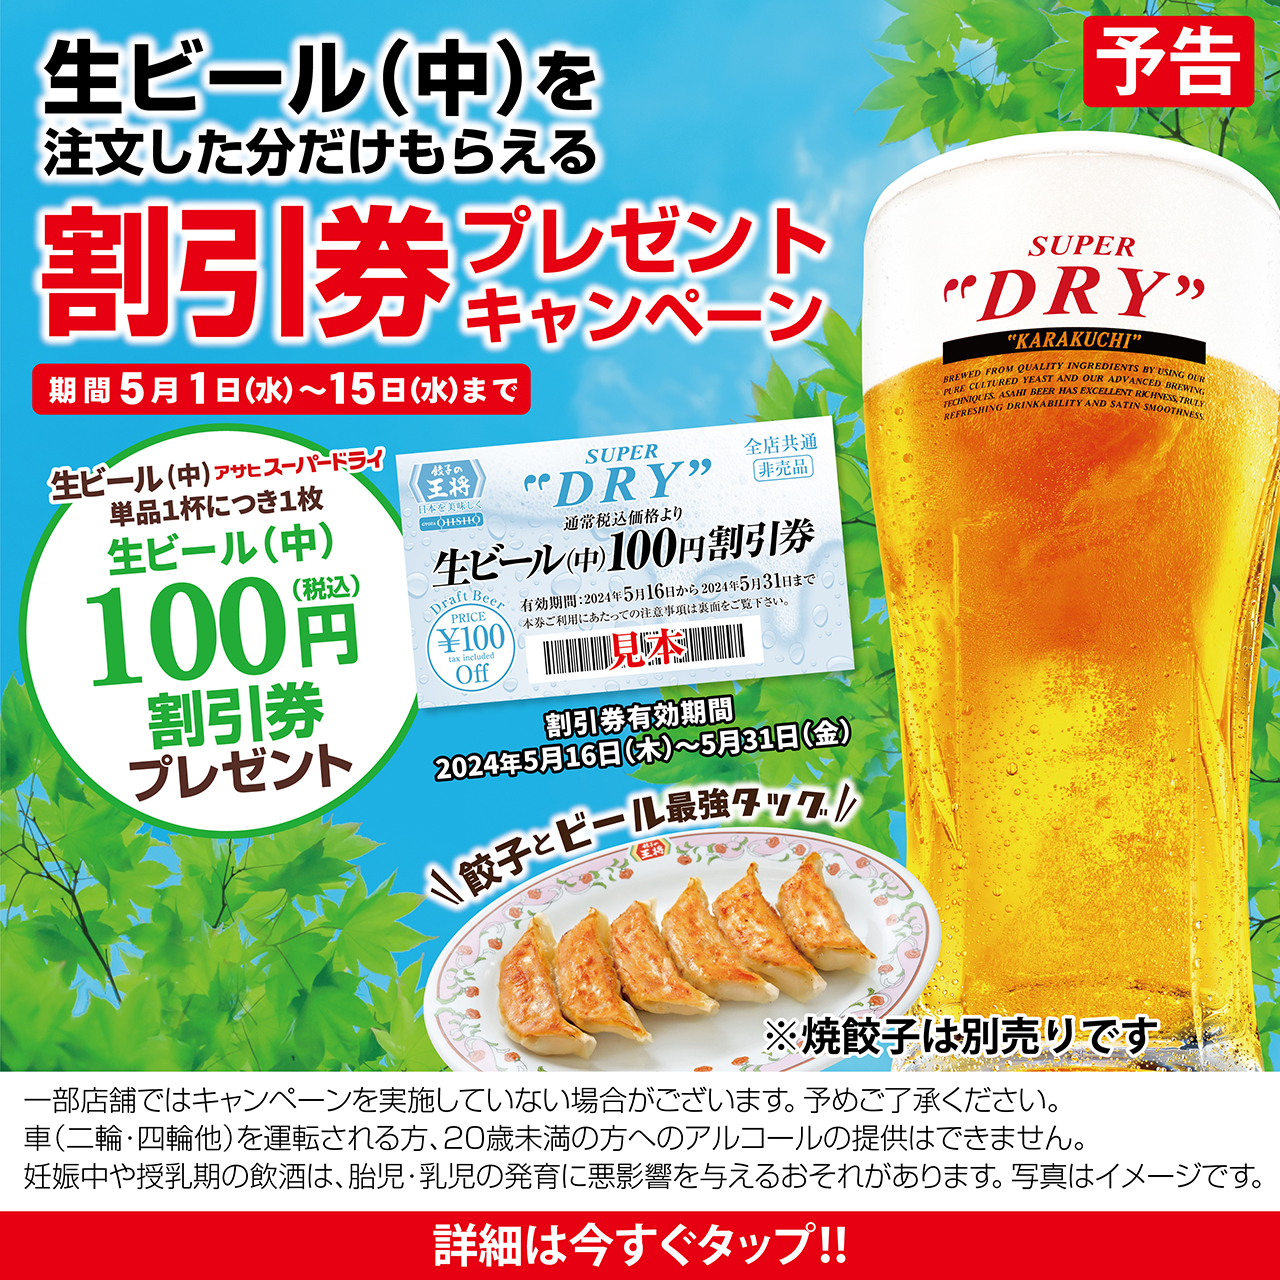 【5月1日〜15日】生ビール(中)割引券プレゼントキャンペーン開催!!